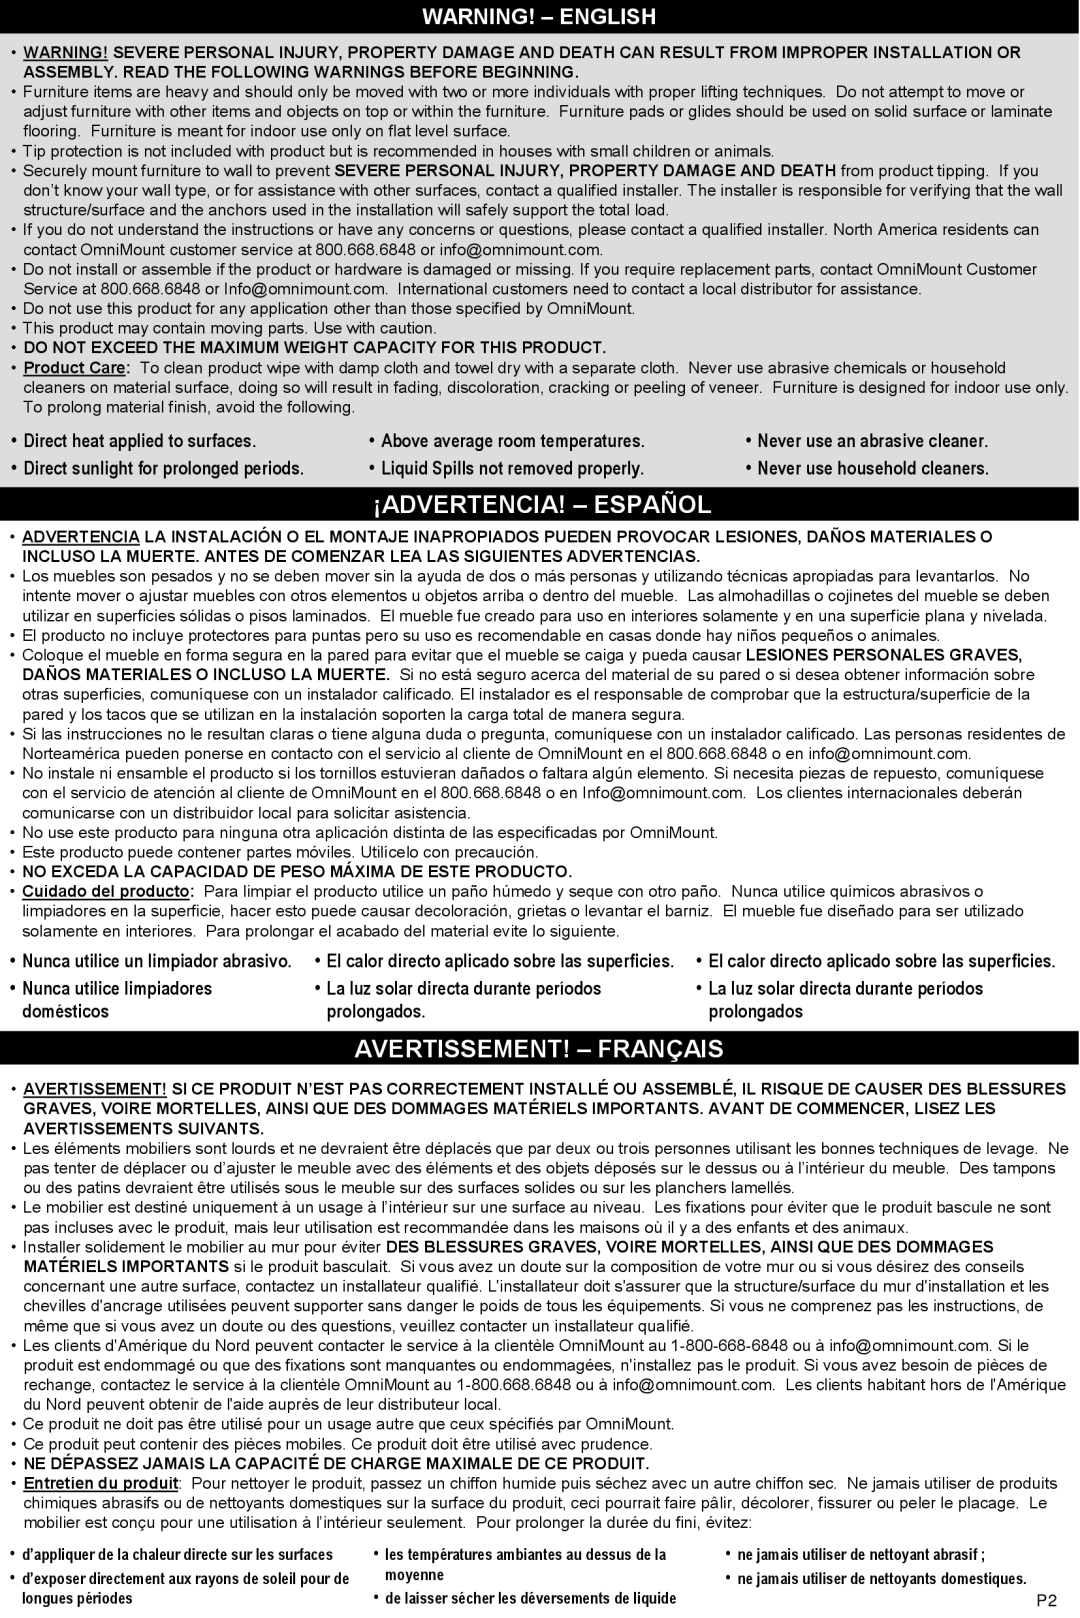 Omnimount LS31, OM1100026 instruction manual ¡Advertencia! - Español, Avertissement! - Français, Warning! - English 